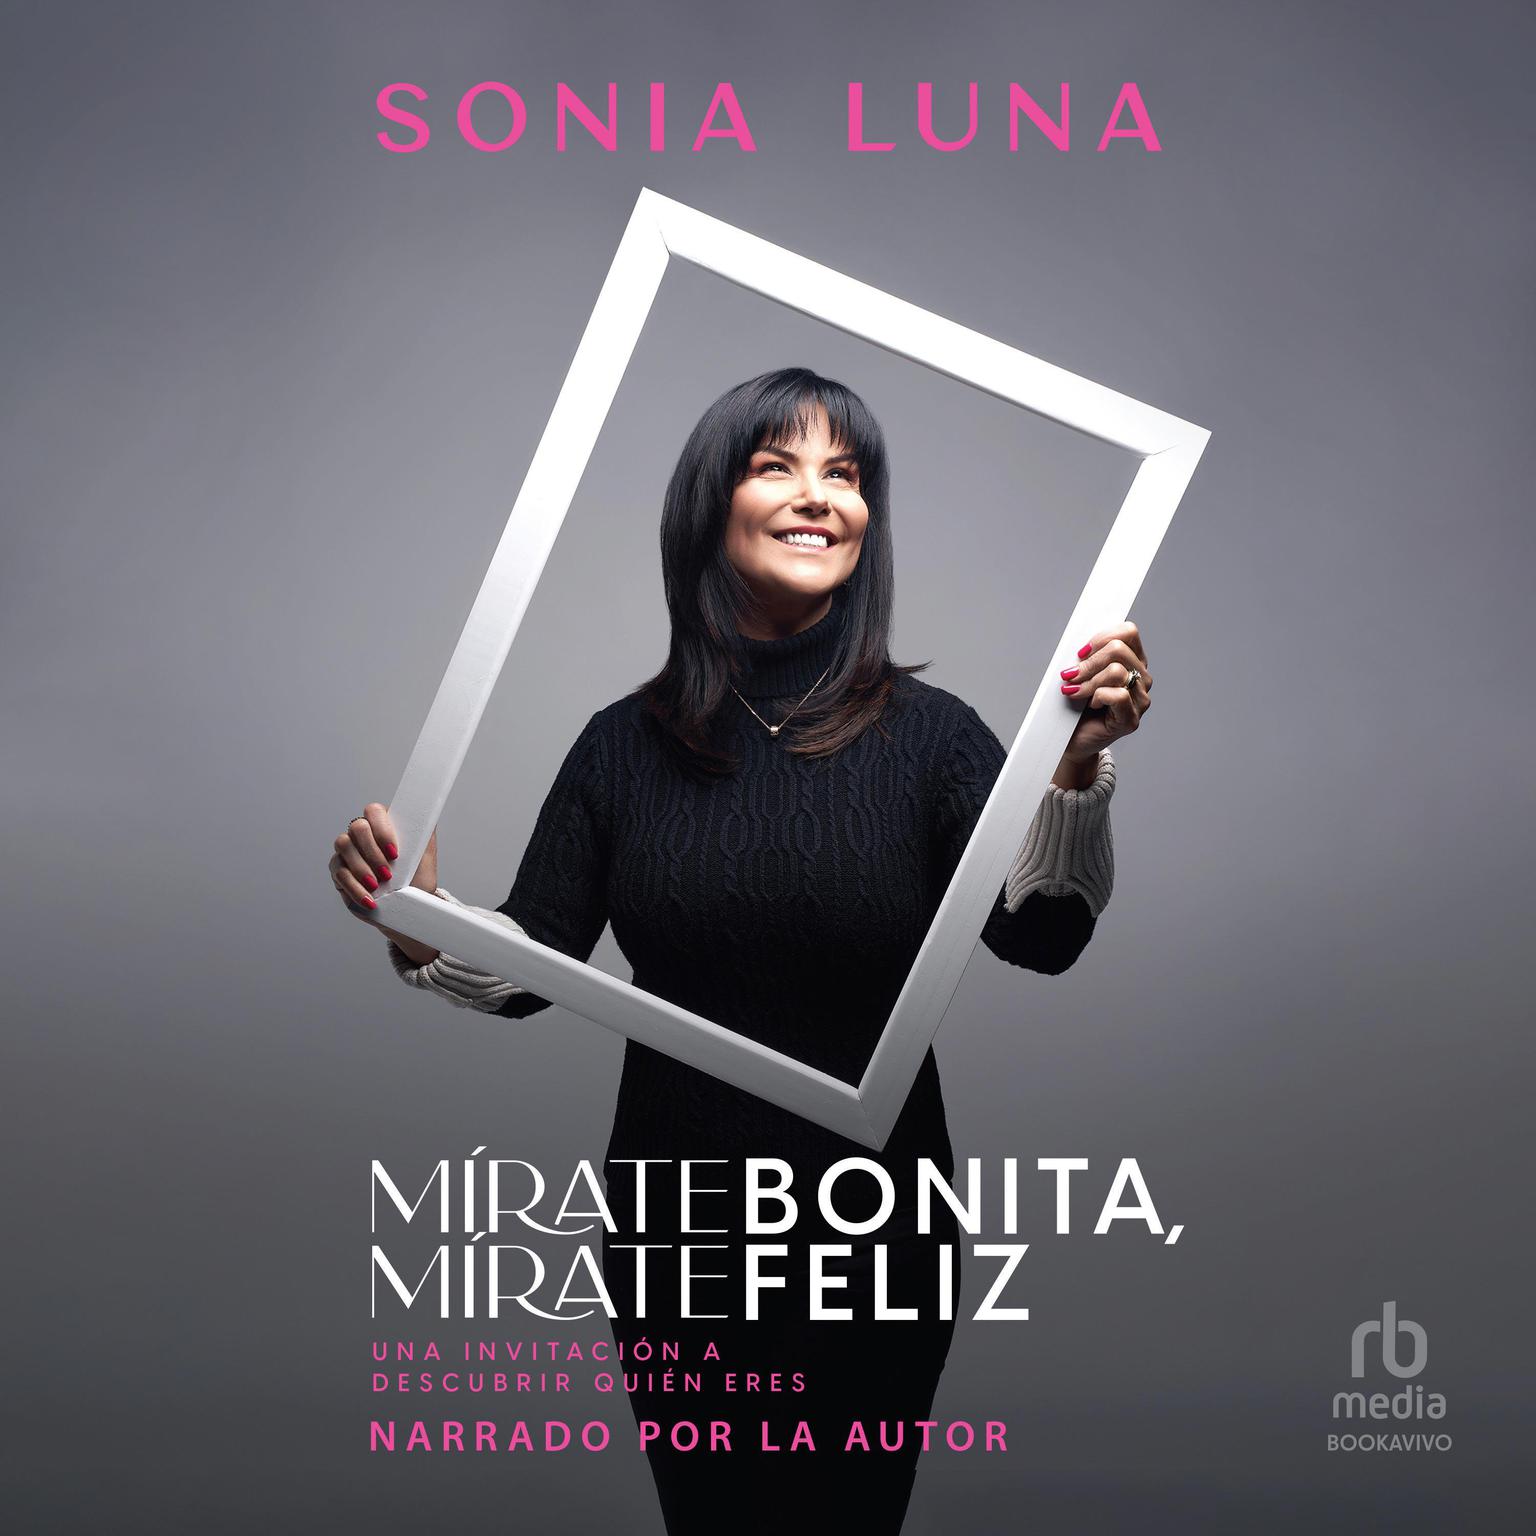 Mírate bonita, mírate feliz (Look at Yourself Pretty, Look at Yourself Happy): Una invitación a descubrir quién eres Audiobook, by Sonia Luna